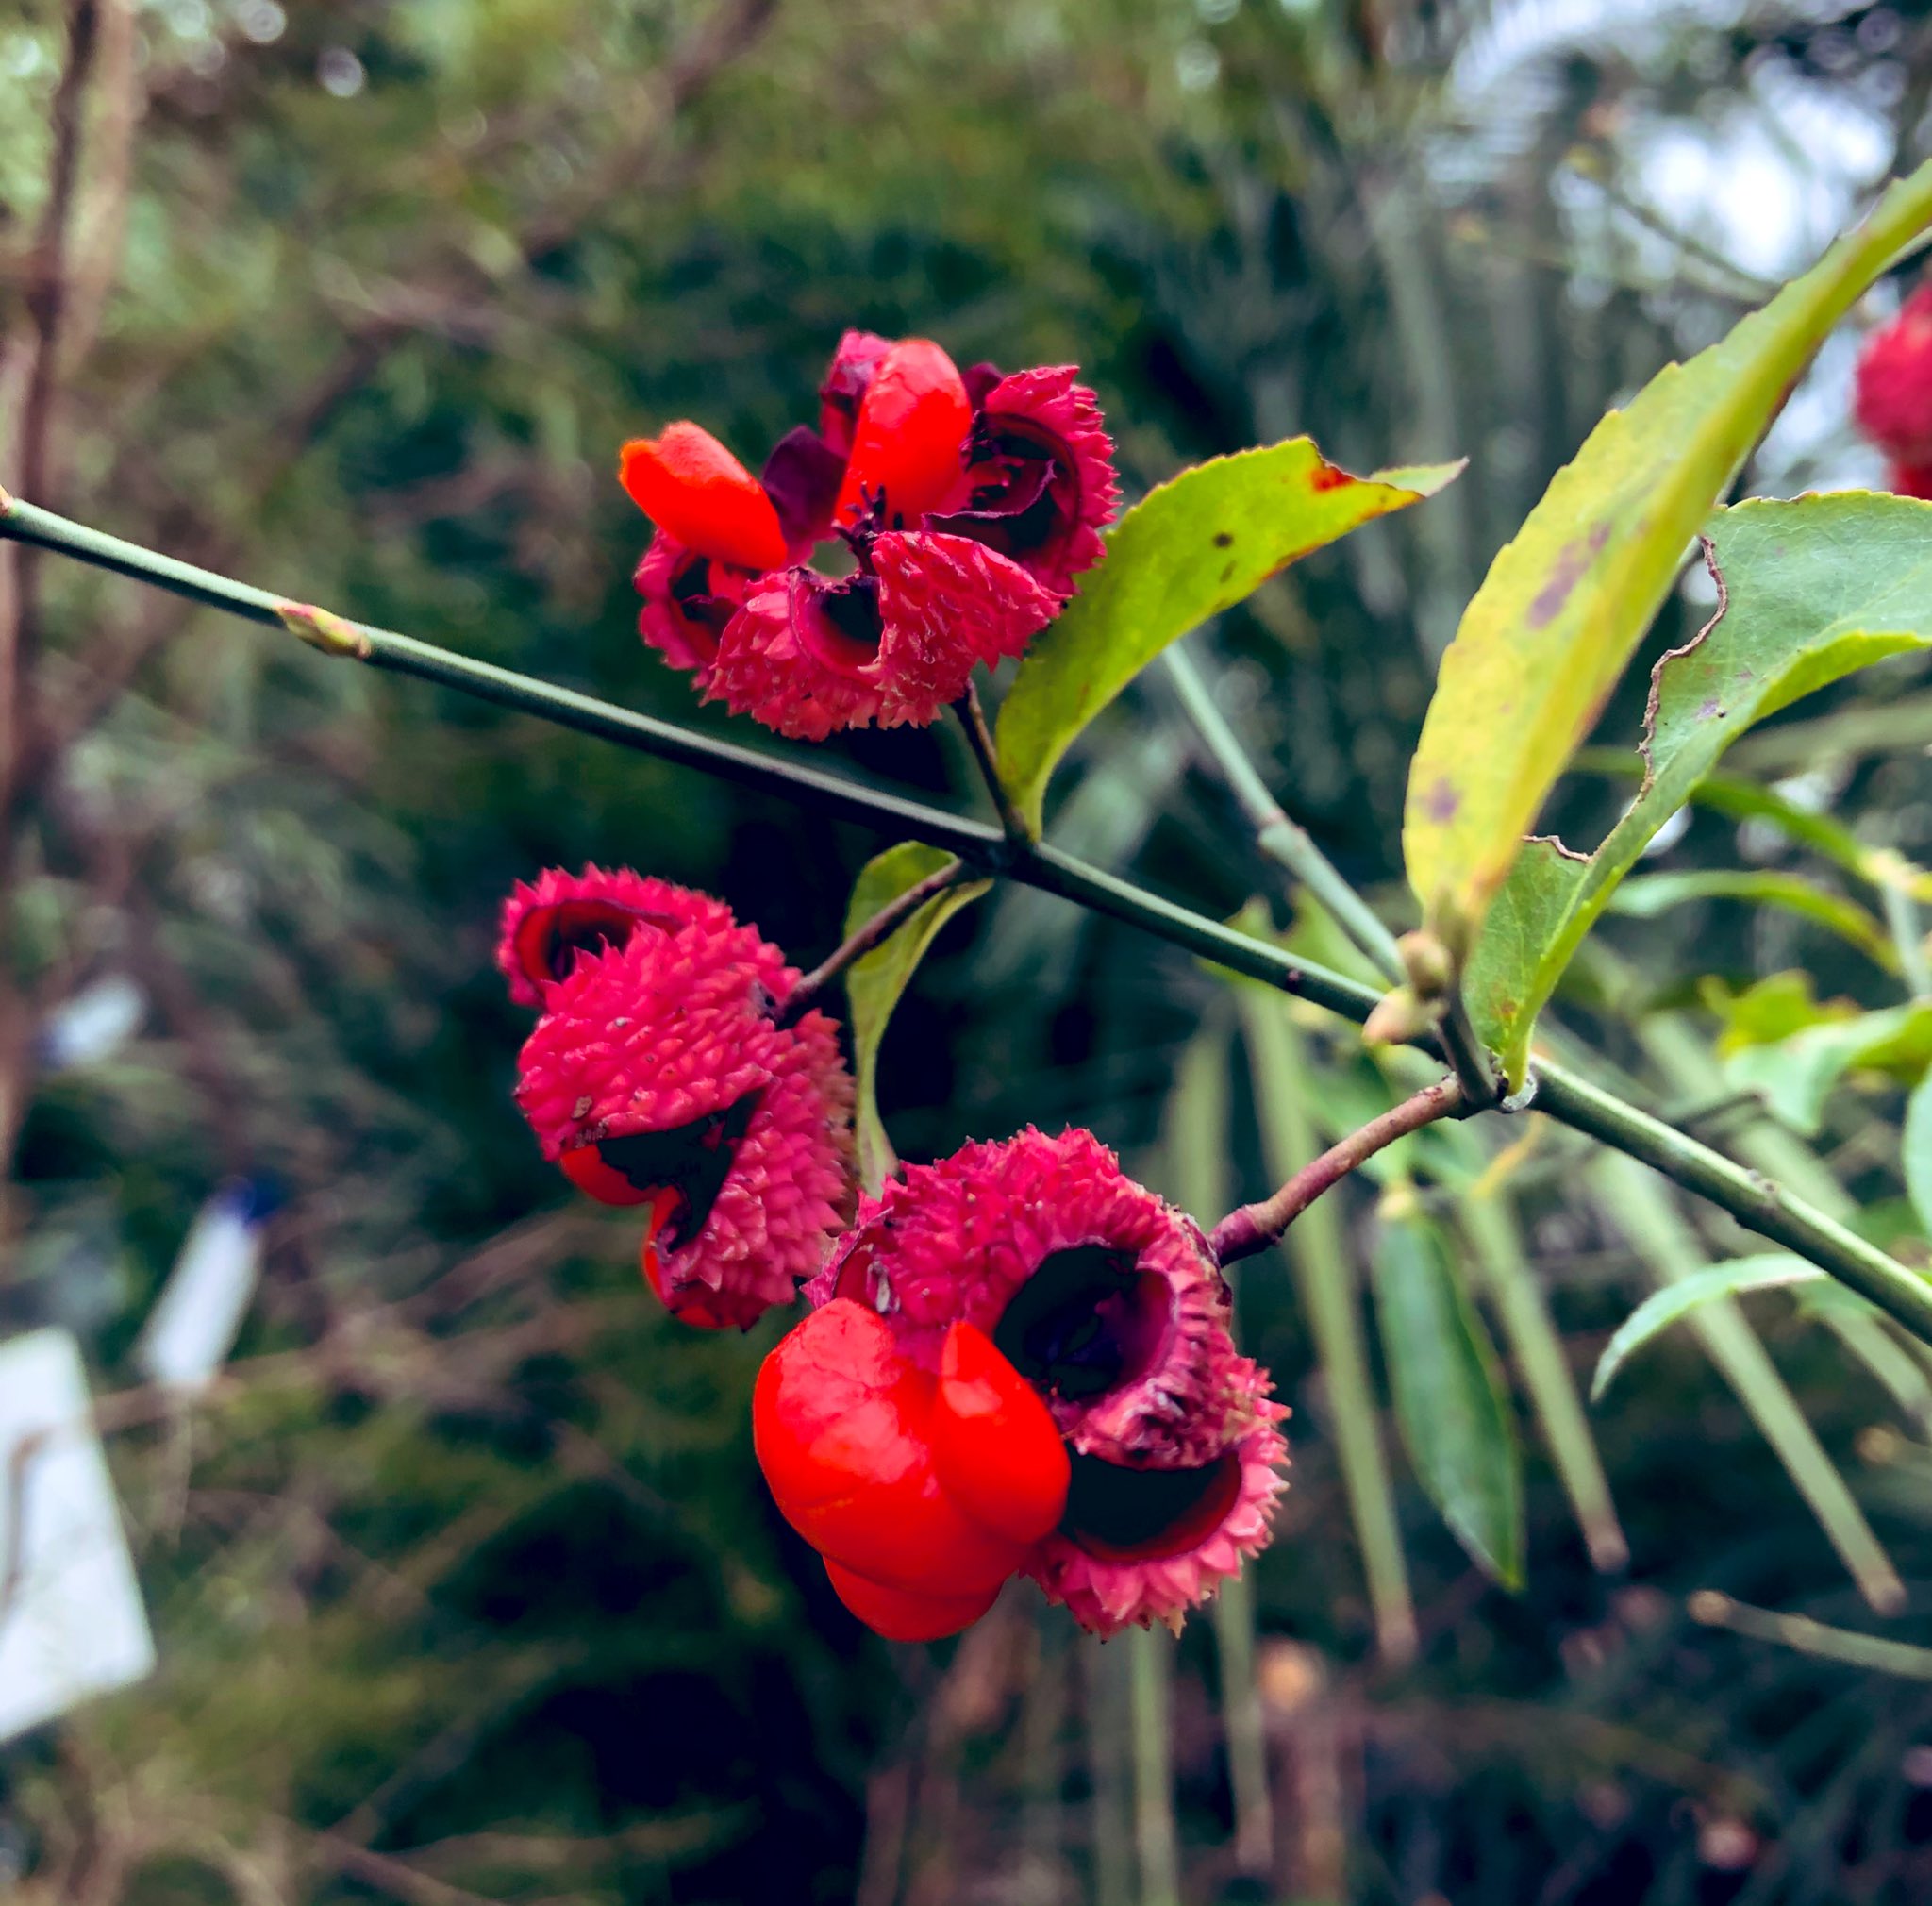 Hirutan25 長期休止中 おはようございます 今日は秋にﾄﾞﾘｱﾝの様な赤実が弾け 赤い種子が現れる 面白い花 ツリバナアメリカーナ 葉が涼しげな細葉になる珍しい品種です 花言葉は 片思い です アメリカンなﾏﾕﾐさんですかね 赤い色はときめく色で